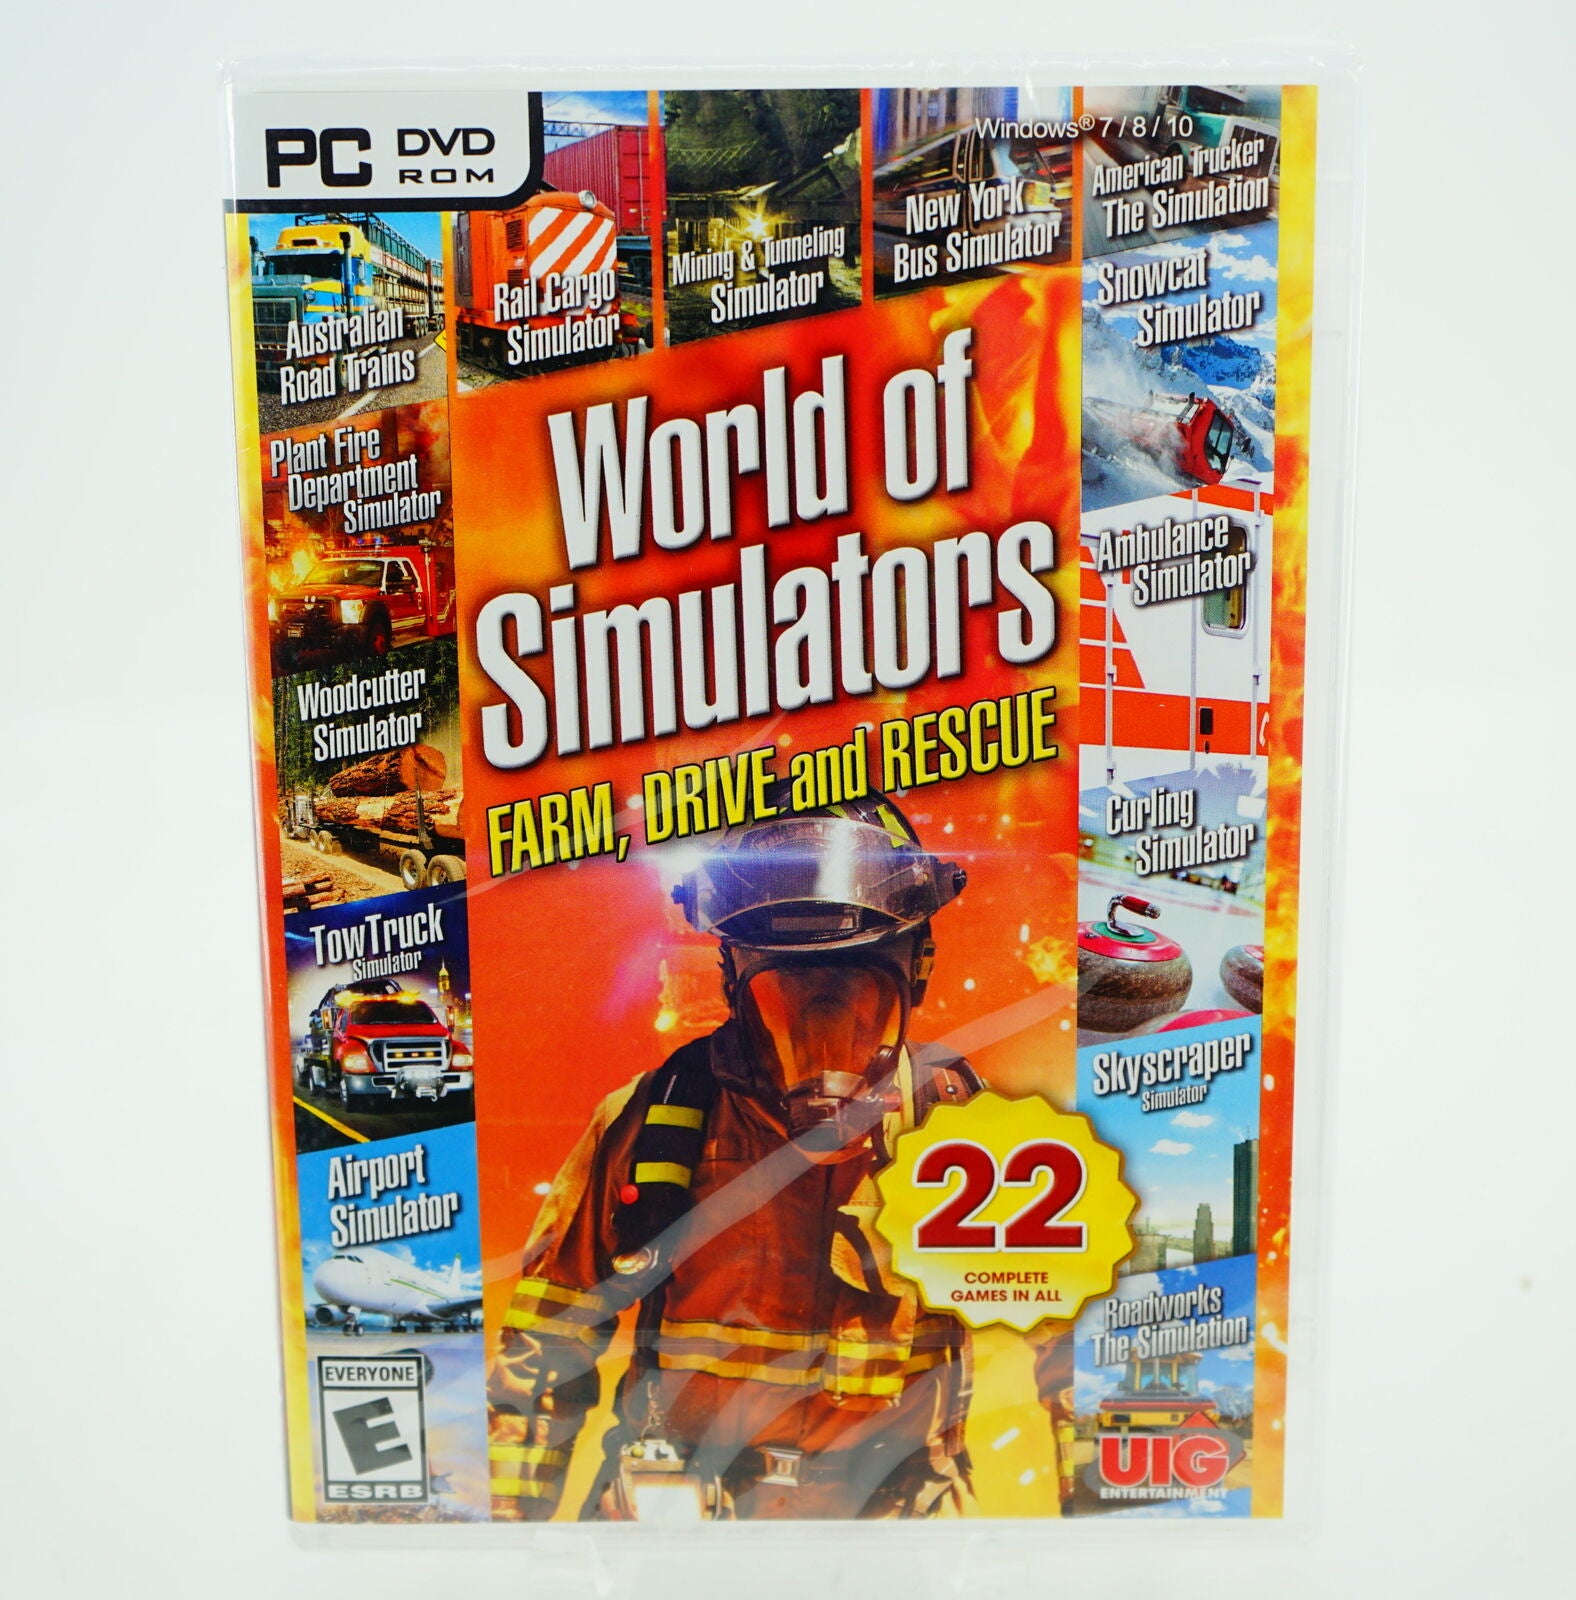 PC DVD ROM World of Simulators: Farm, Drive & Rescue